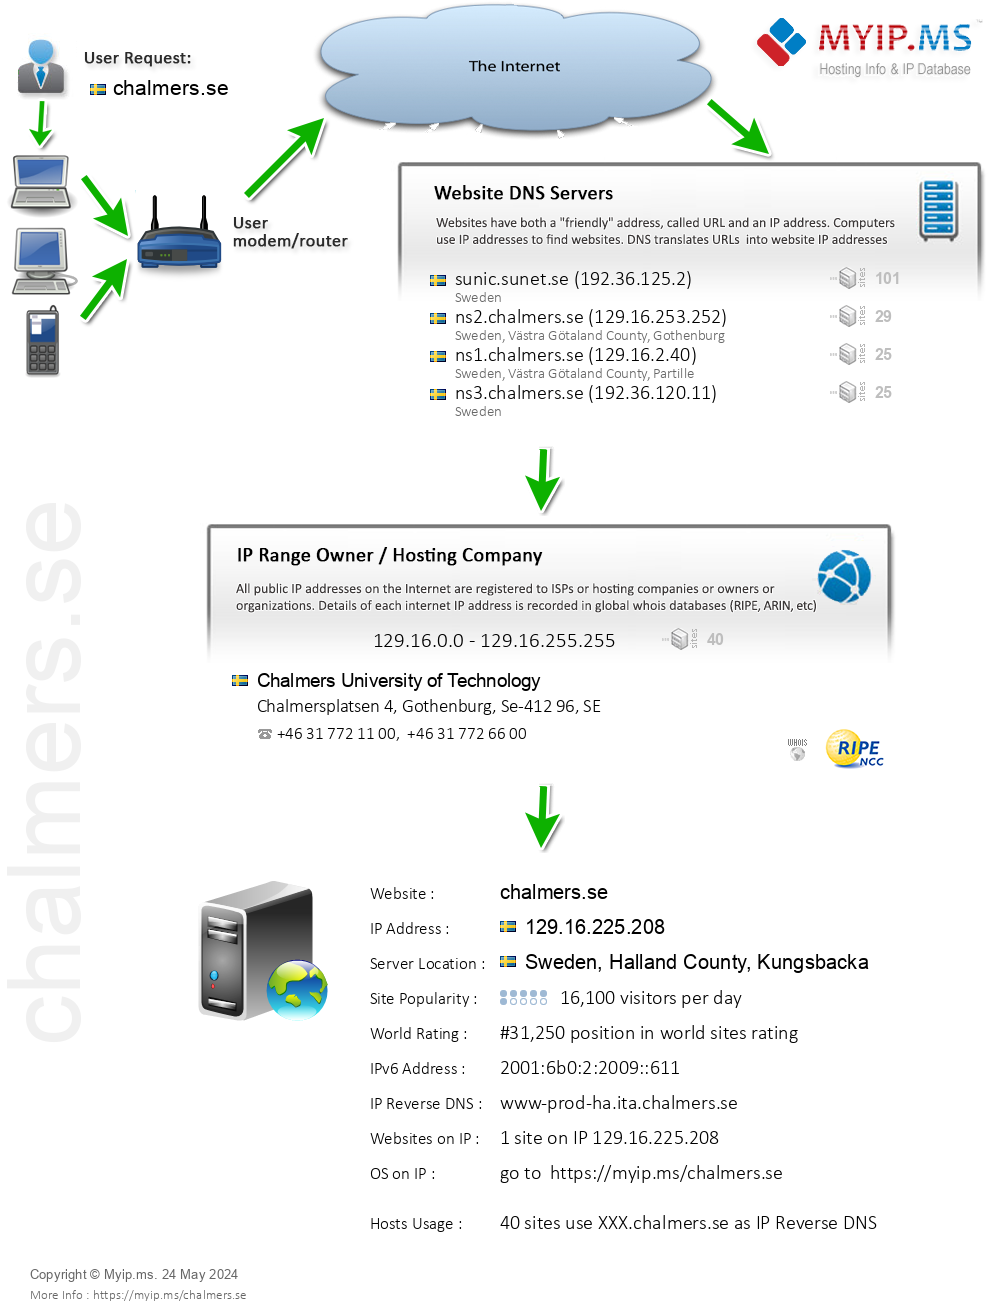 Chalmers.se - Website Hosting Visual IP Diagram